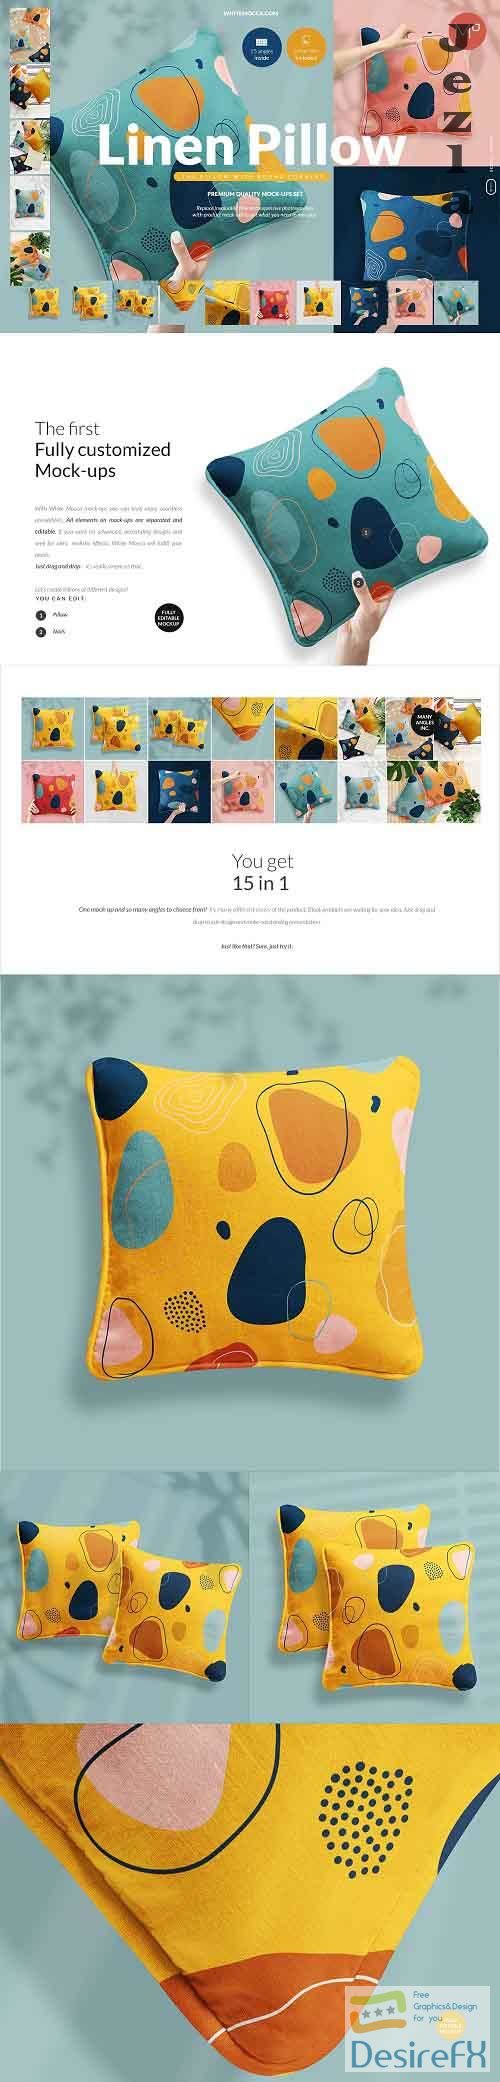 CreativeMarket - Linen Pillow 15x Mock ups Set 5352824